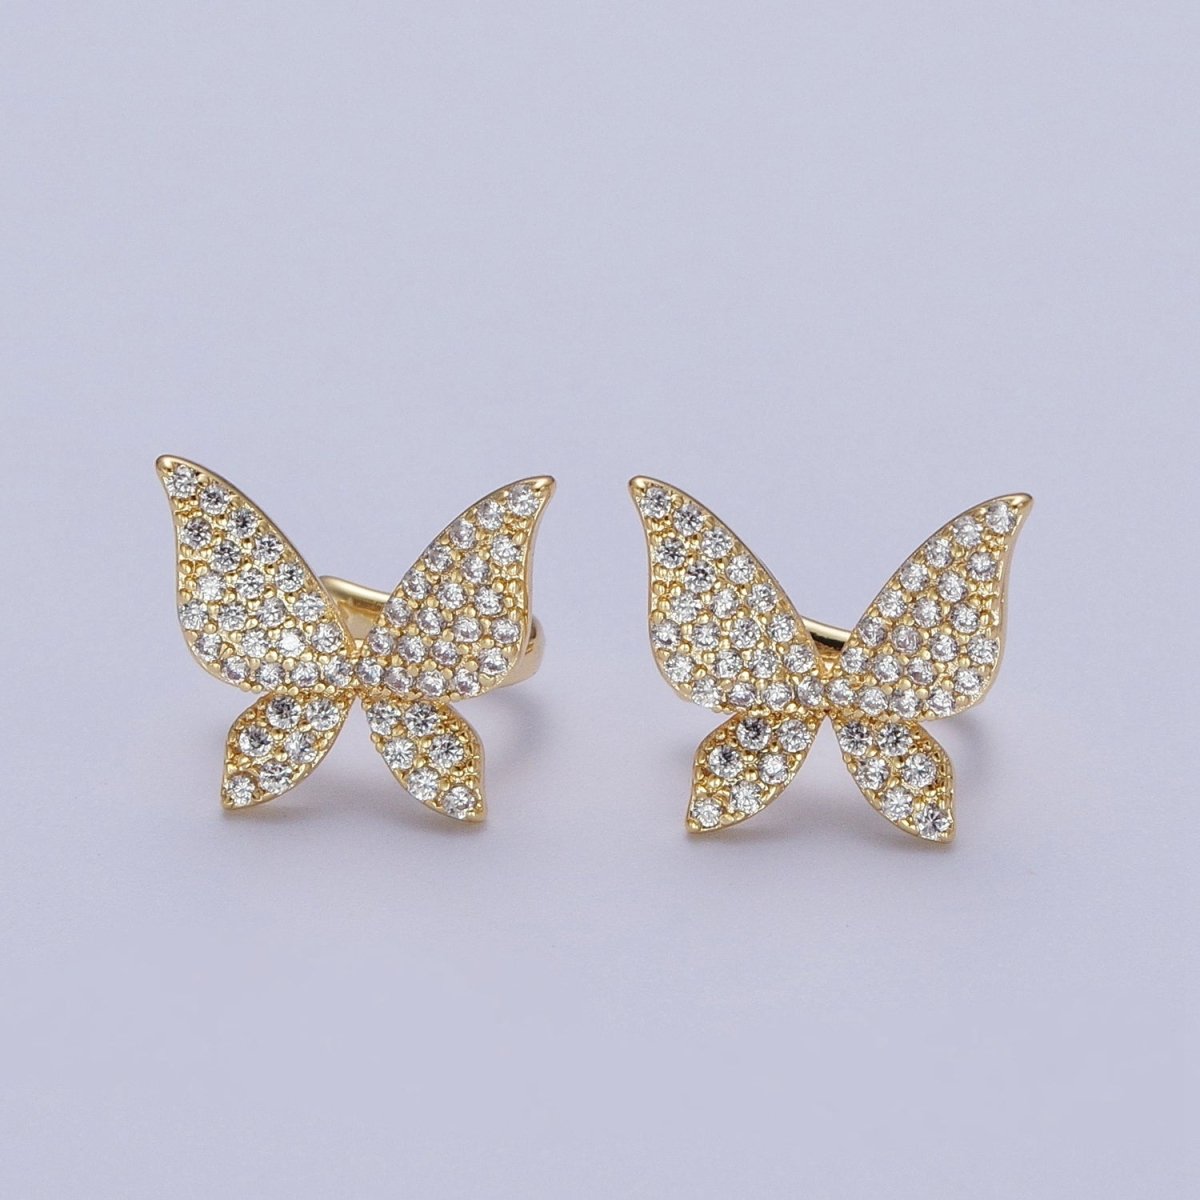 Butterfly Ear Cuff Earrings, Cute Butterfly Earrings With Micro Pave Cubic Zirconia Gold Animal Earrings, Minimalist Jewelry Y-069 - DLUXCA